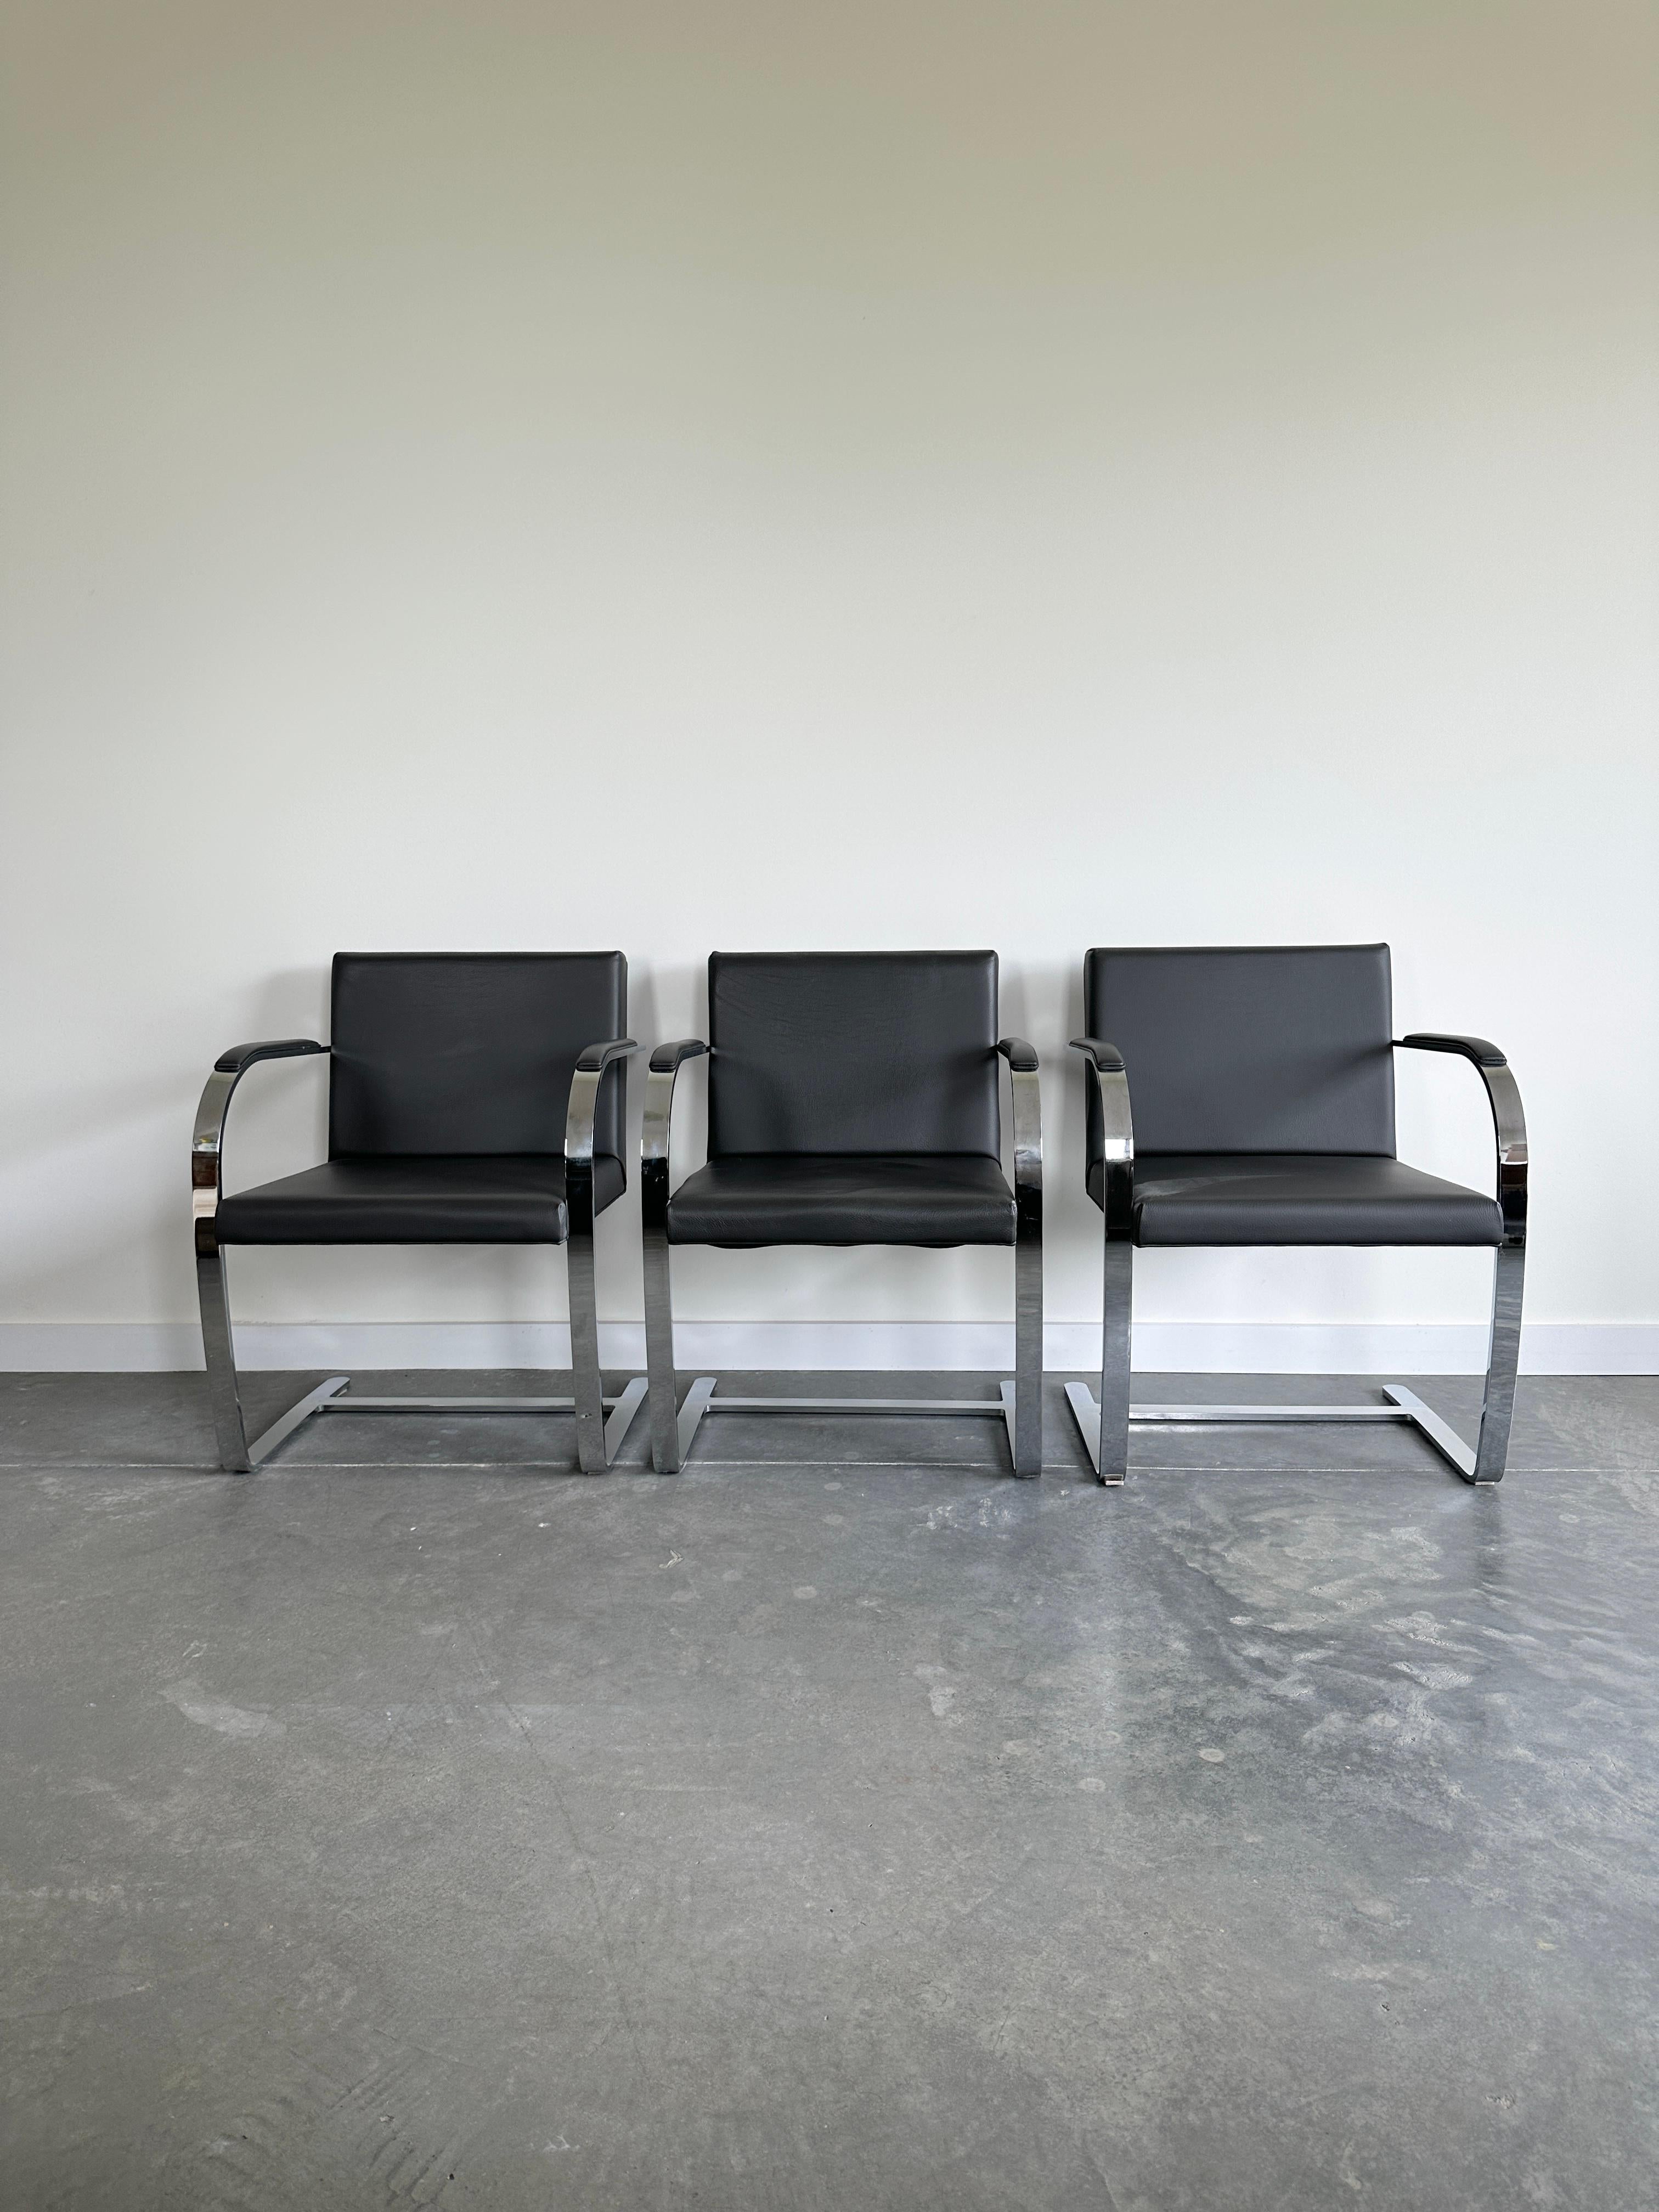 Der Stuhl Flat Bar Brno, Modell 255, ist ein bemerkenswertes Beispiel für modernes Design des berühmten Architekten Ludwig Mies van der Rohe. Er entwarf es 1930 für das Tugendhat-Haus in Brünn, Tschechische Republik, das zum UNESCO-Weltkulturerbe